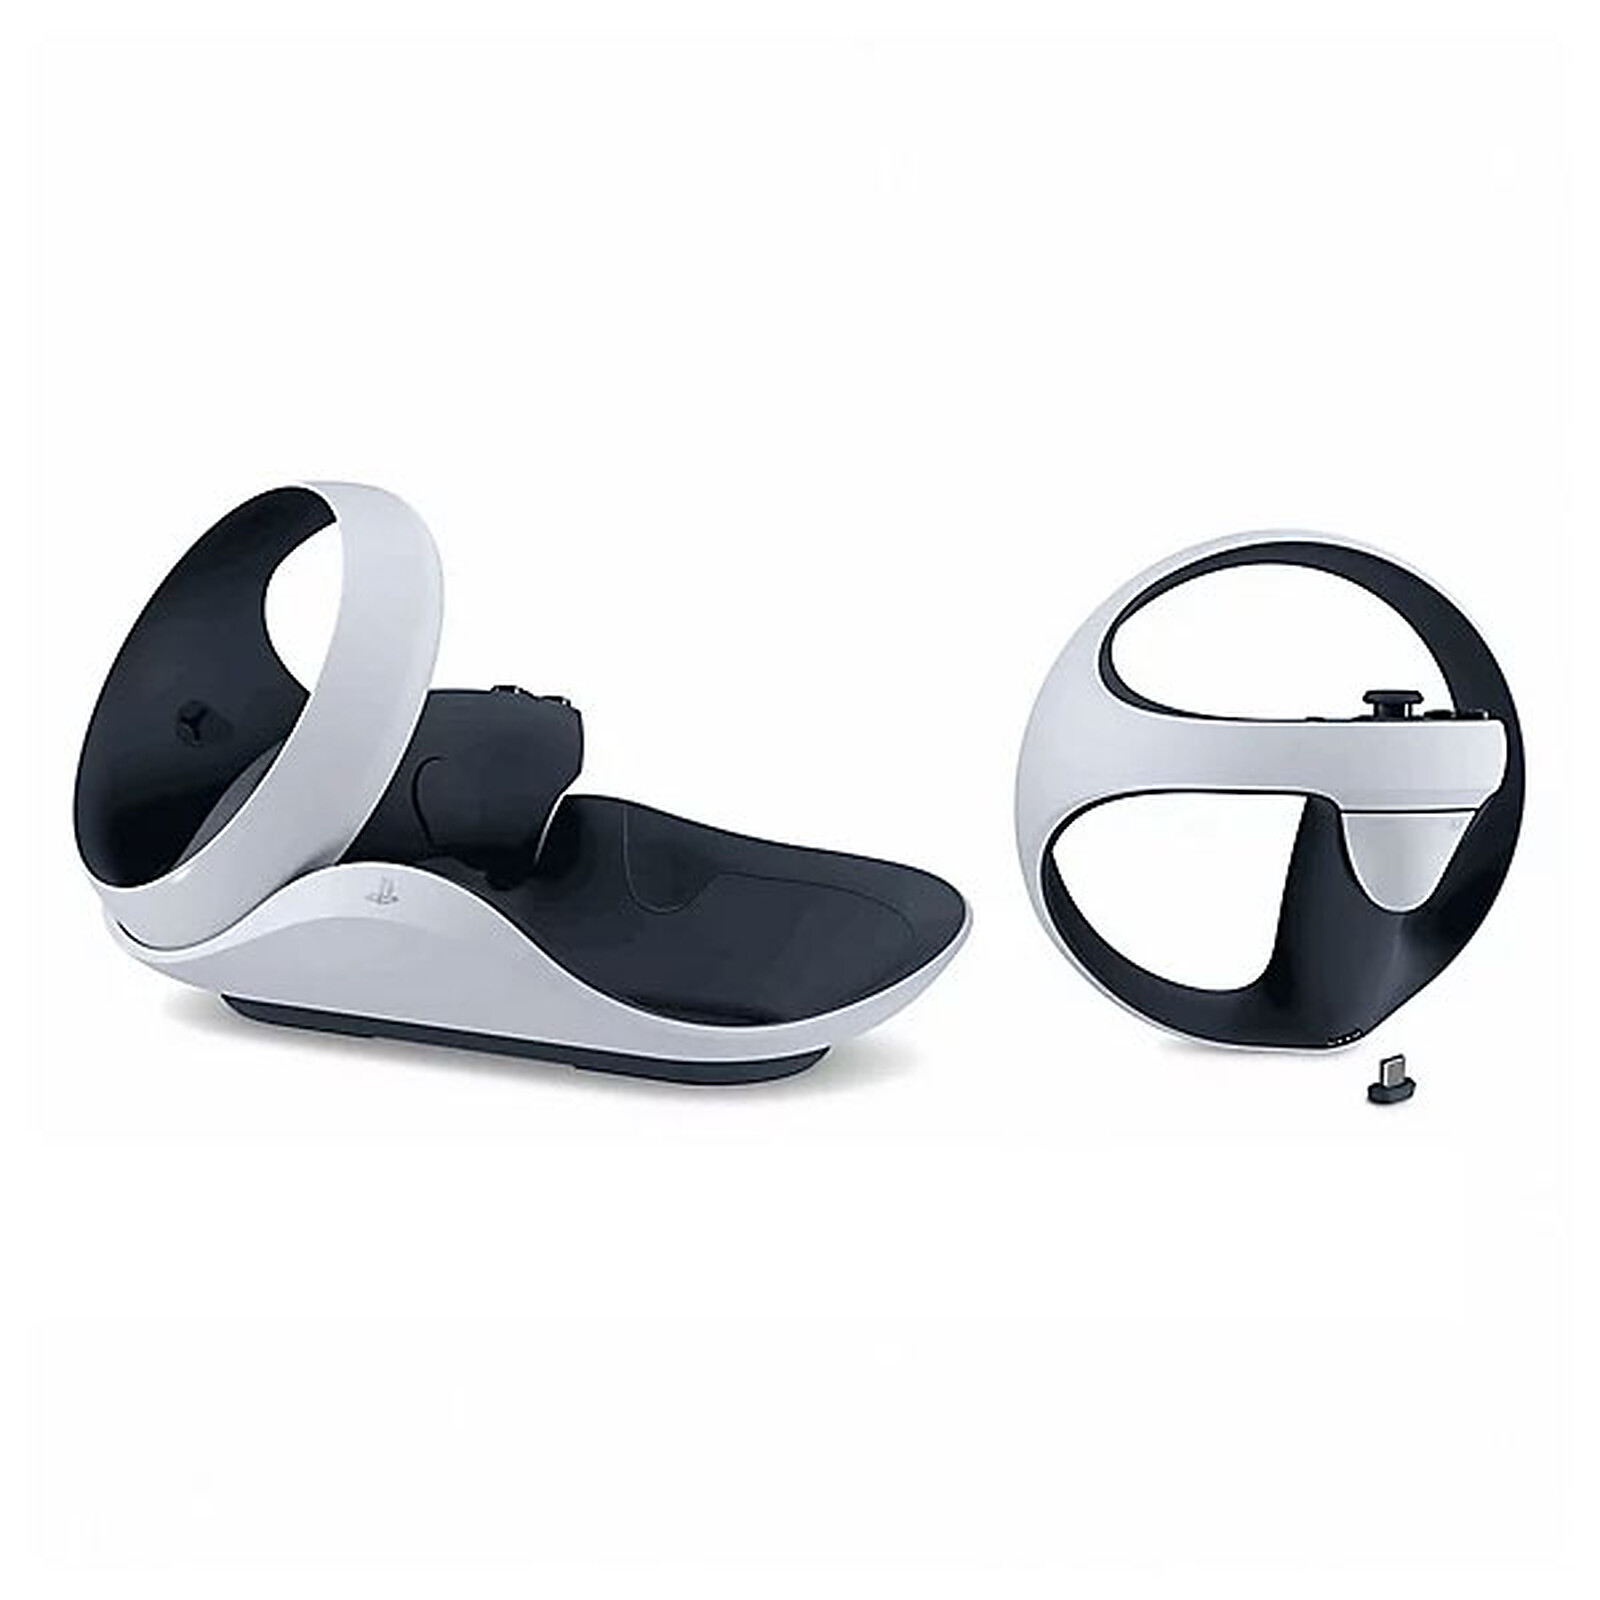 Le casque PS VR2 de la PS5 et ses accessoires sont disponibles chez les  revendeurs